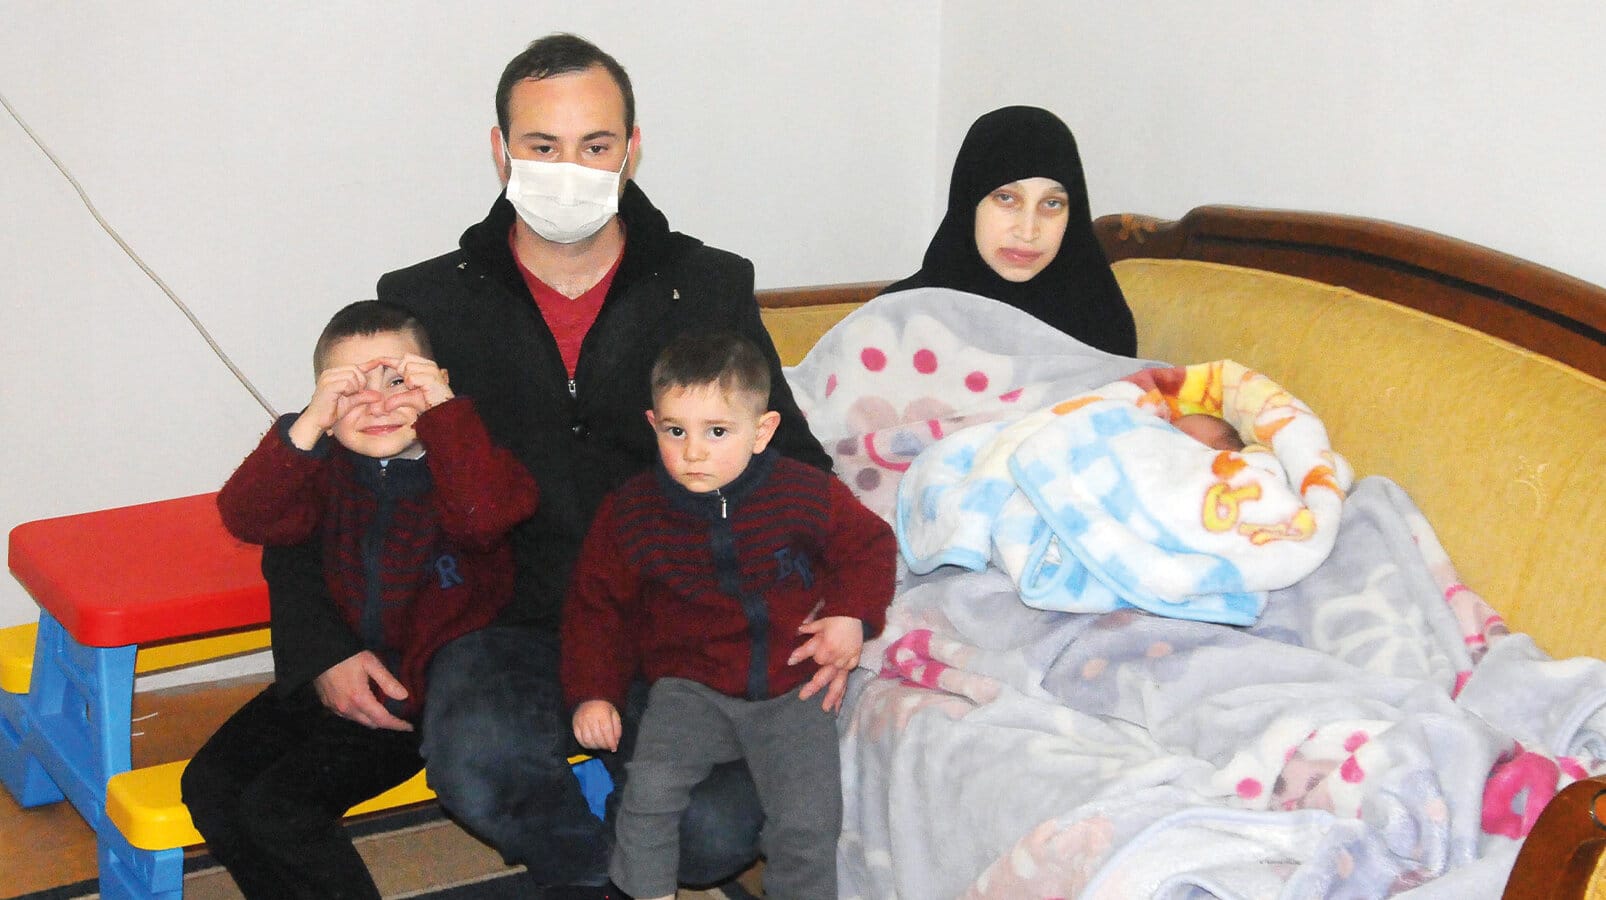 الإقامة الجبرية لسائق تكسي رفض نقل إمرأة سورية حامل للمشفى في تركيا